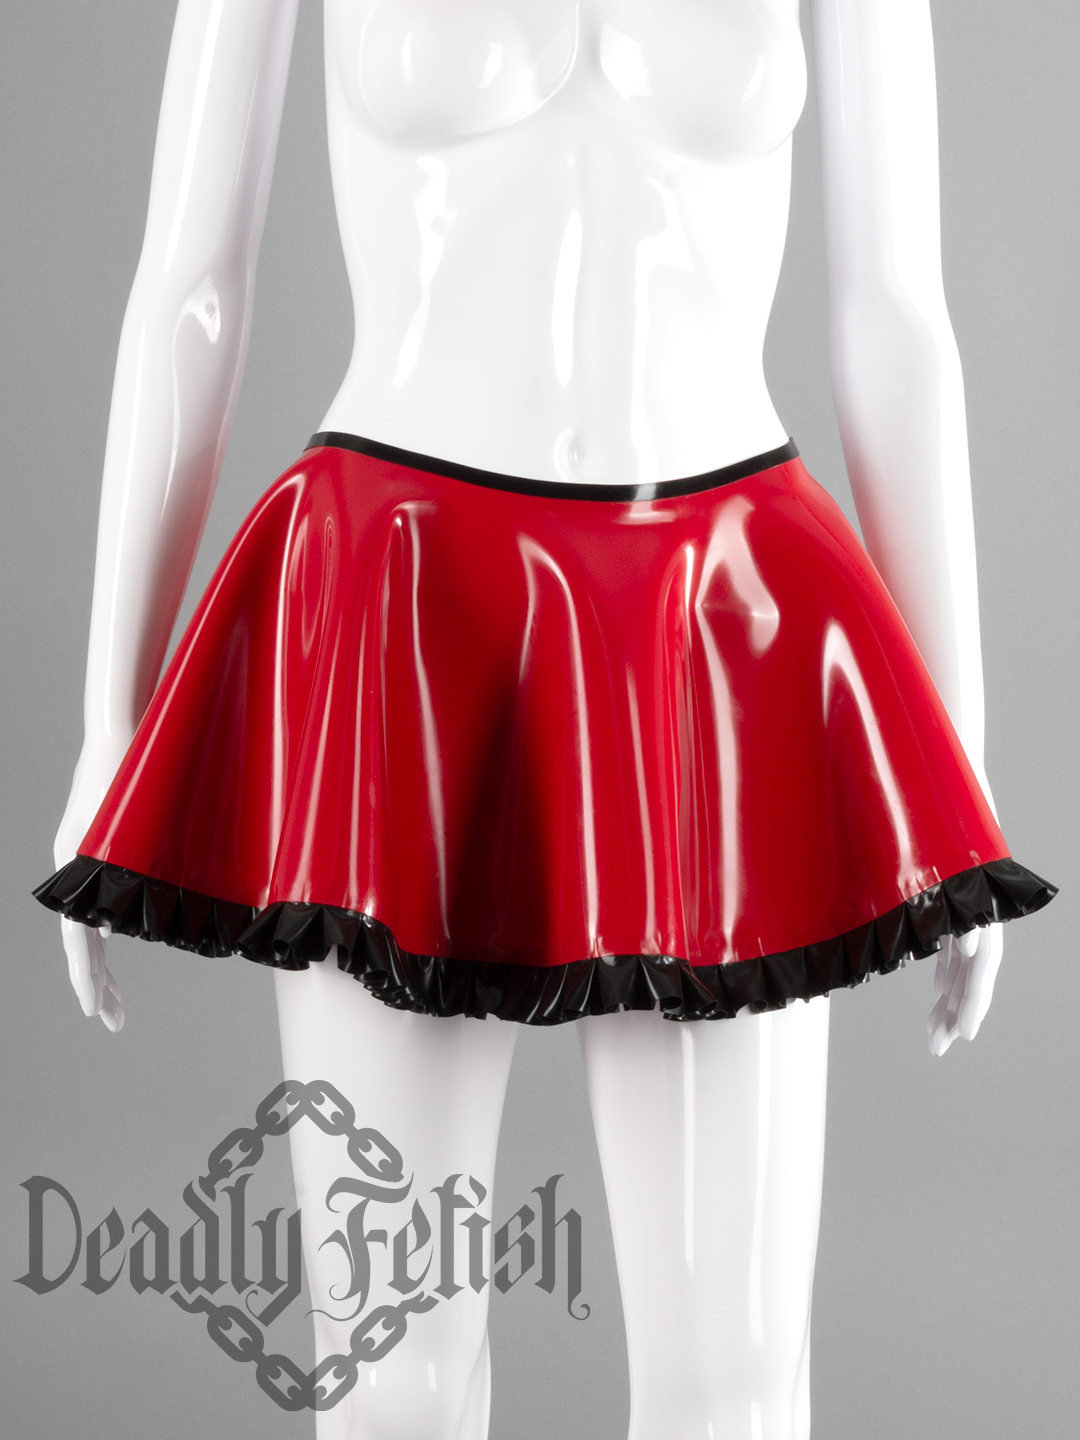 Deadly Fetish Latex: Skirt #24